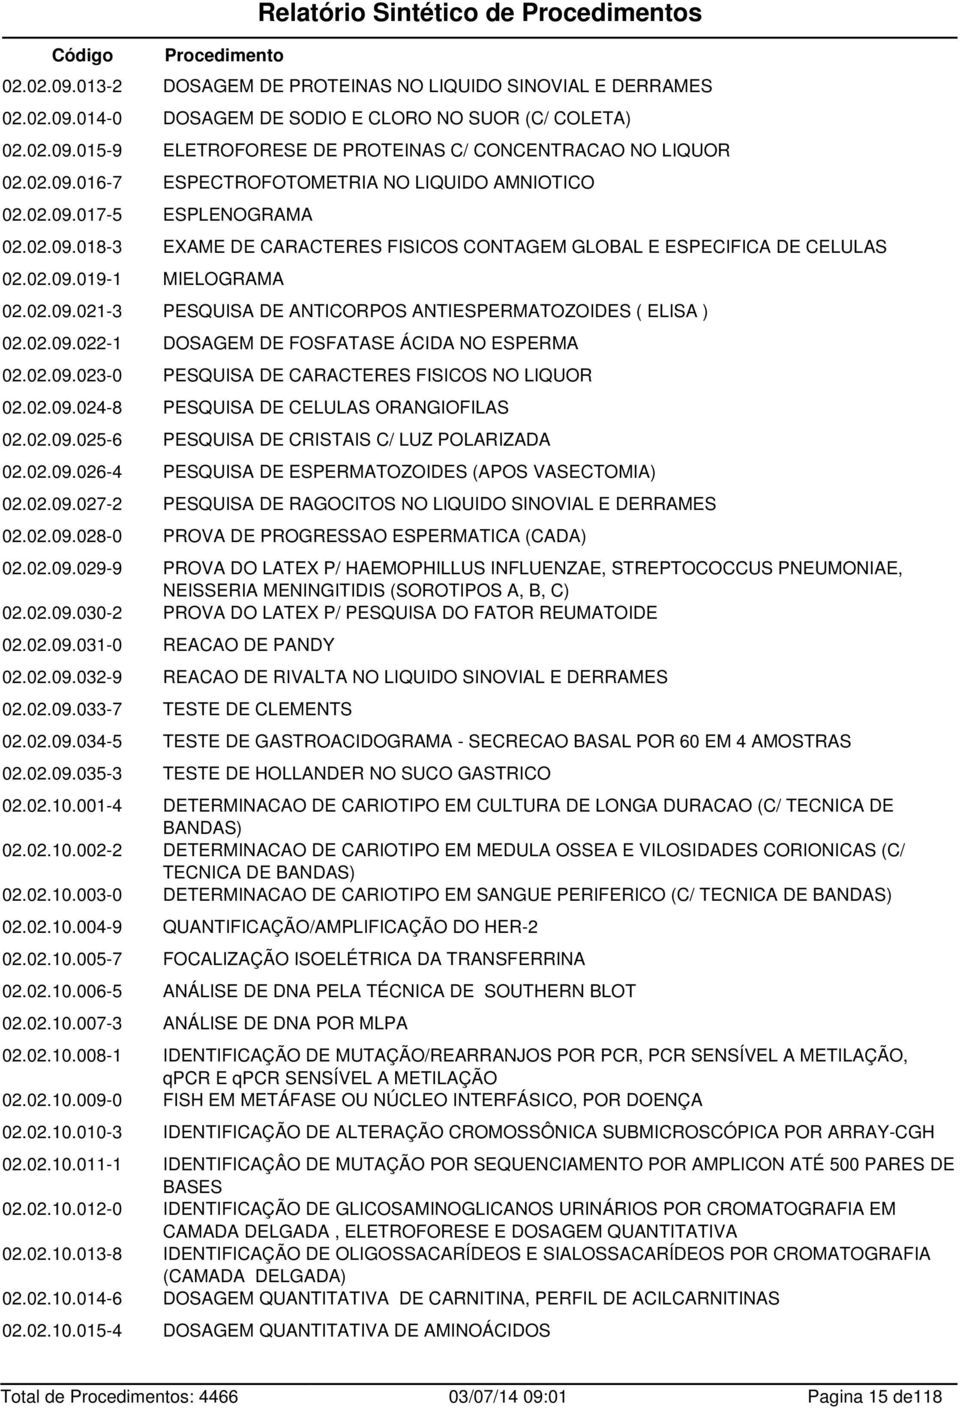 02.09.022-1 DOSAGEM DE FOSFATASE ÁCIDA NO ESPERMA 02.02.09.023-0 PESQUISA DE CARACTERES FISICOS NO LIQUOR 02.02.09.024-8 PESQUISA DE CELULAS ORANGIOFILAS 02.02.09.025-6 PESQUISA DE CRISTAIS C/ LUZ POLARIZADA 02.